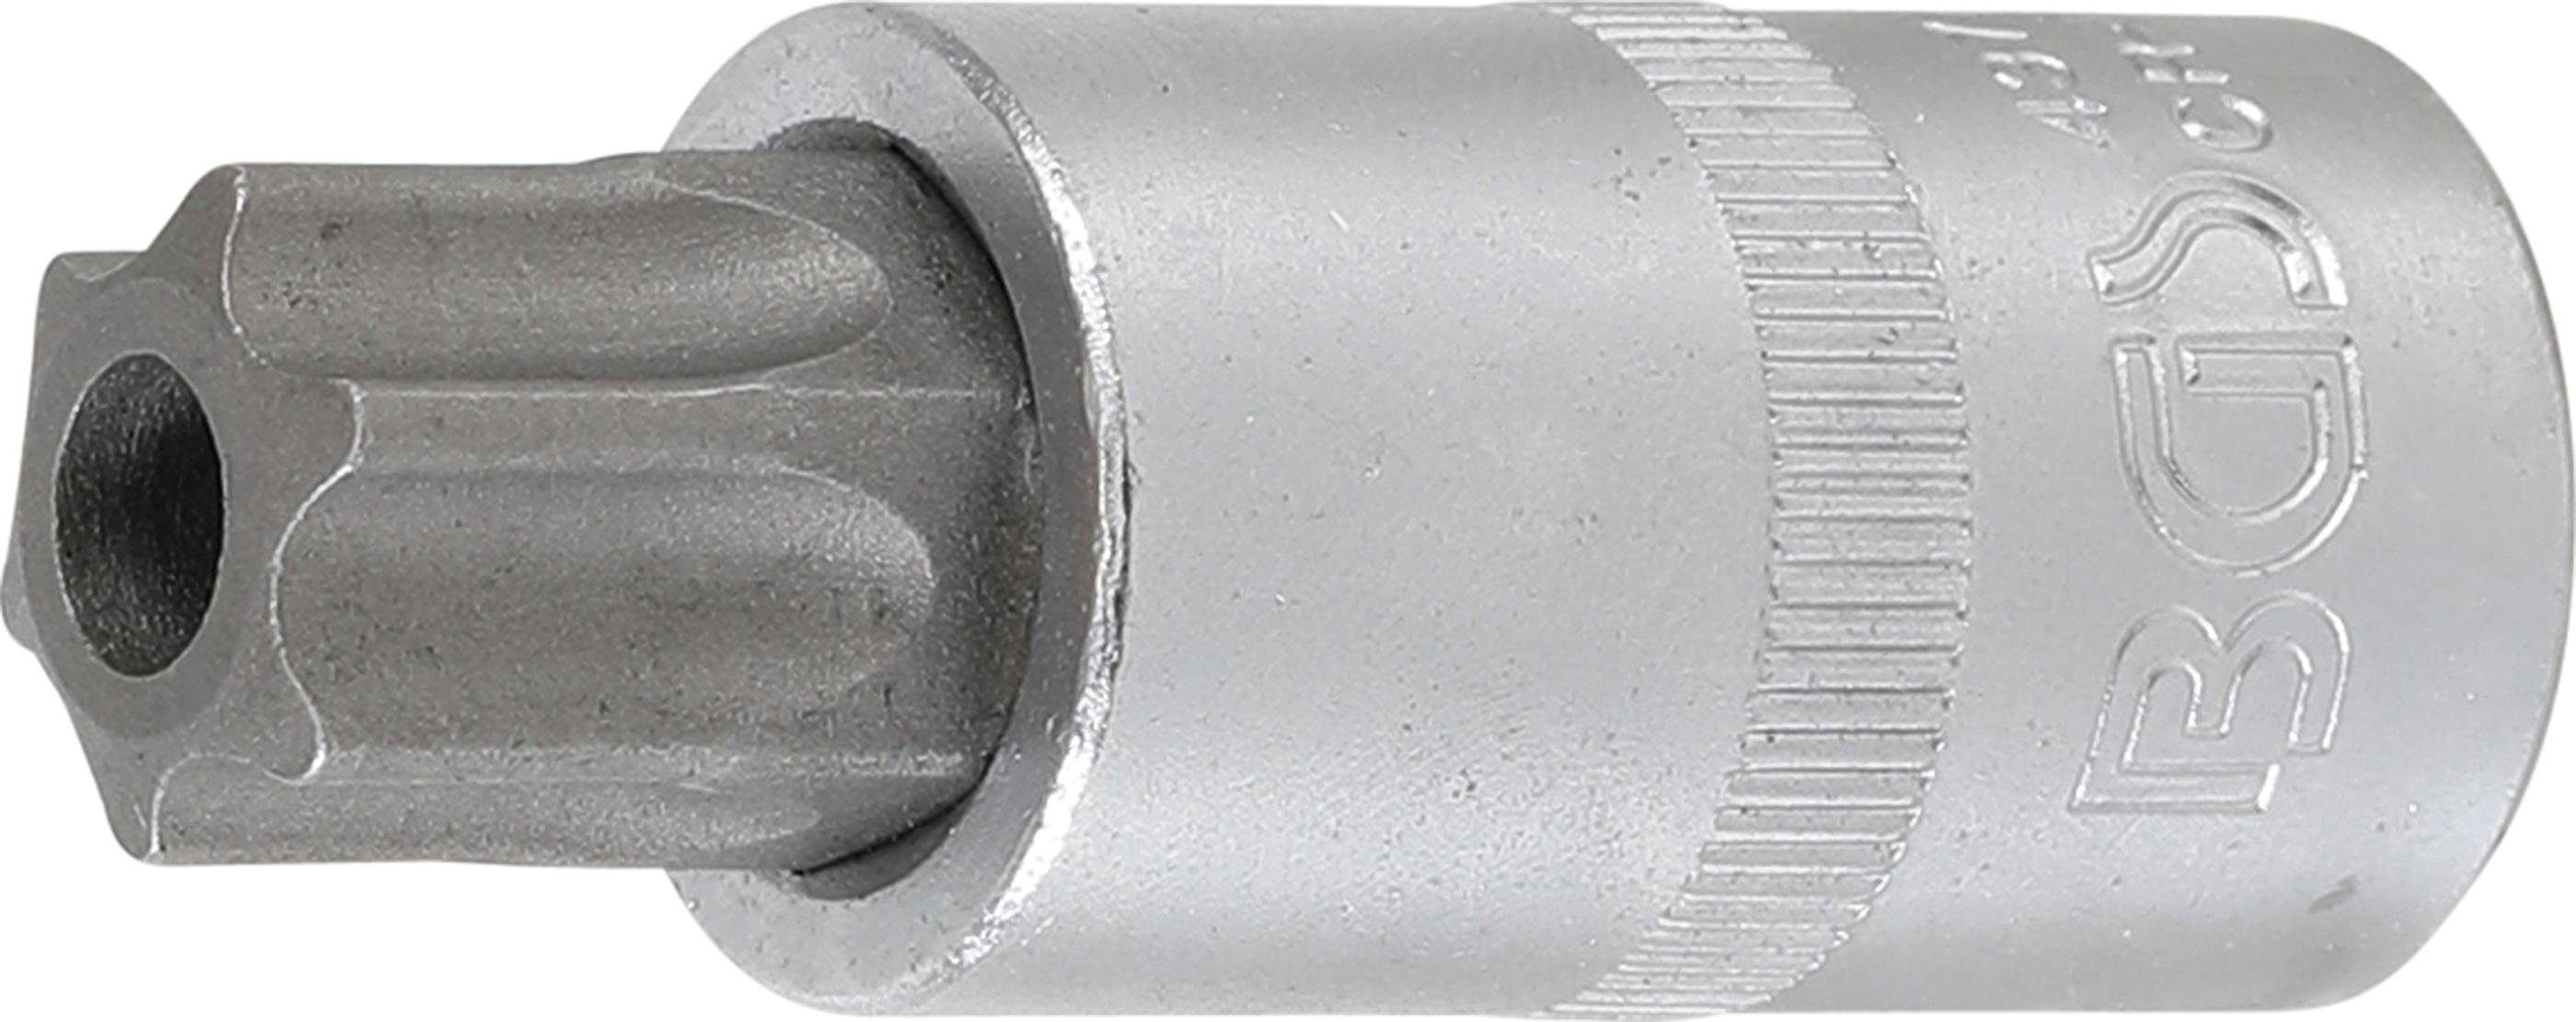 BGS technic Bit-Schraubendreher Bit-Einsatz, Antrieb Innenvierkant 12,5 mm (1/2), T-Profil (für Torx) mit Bohrung T70